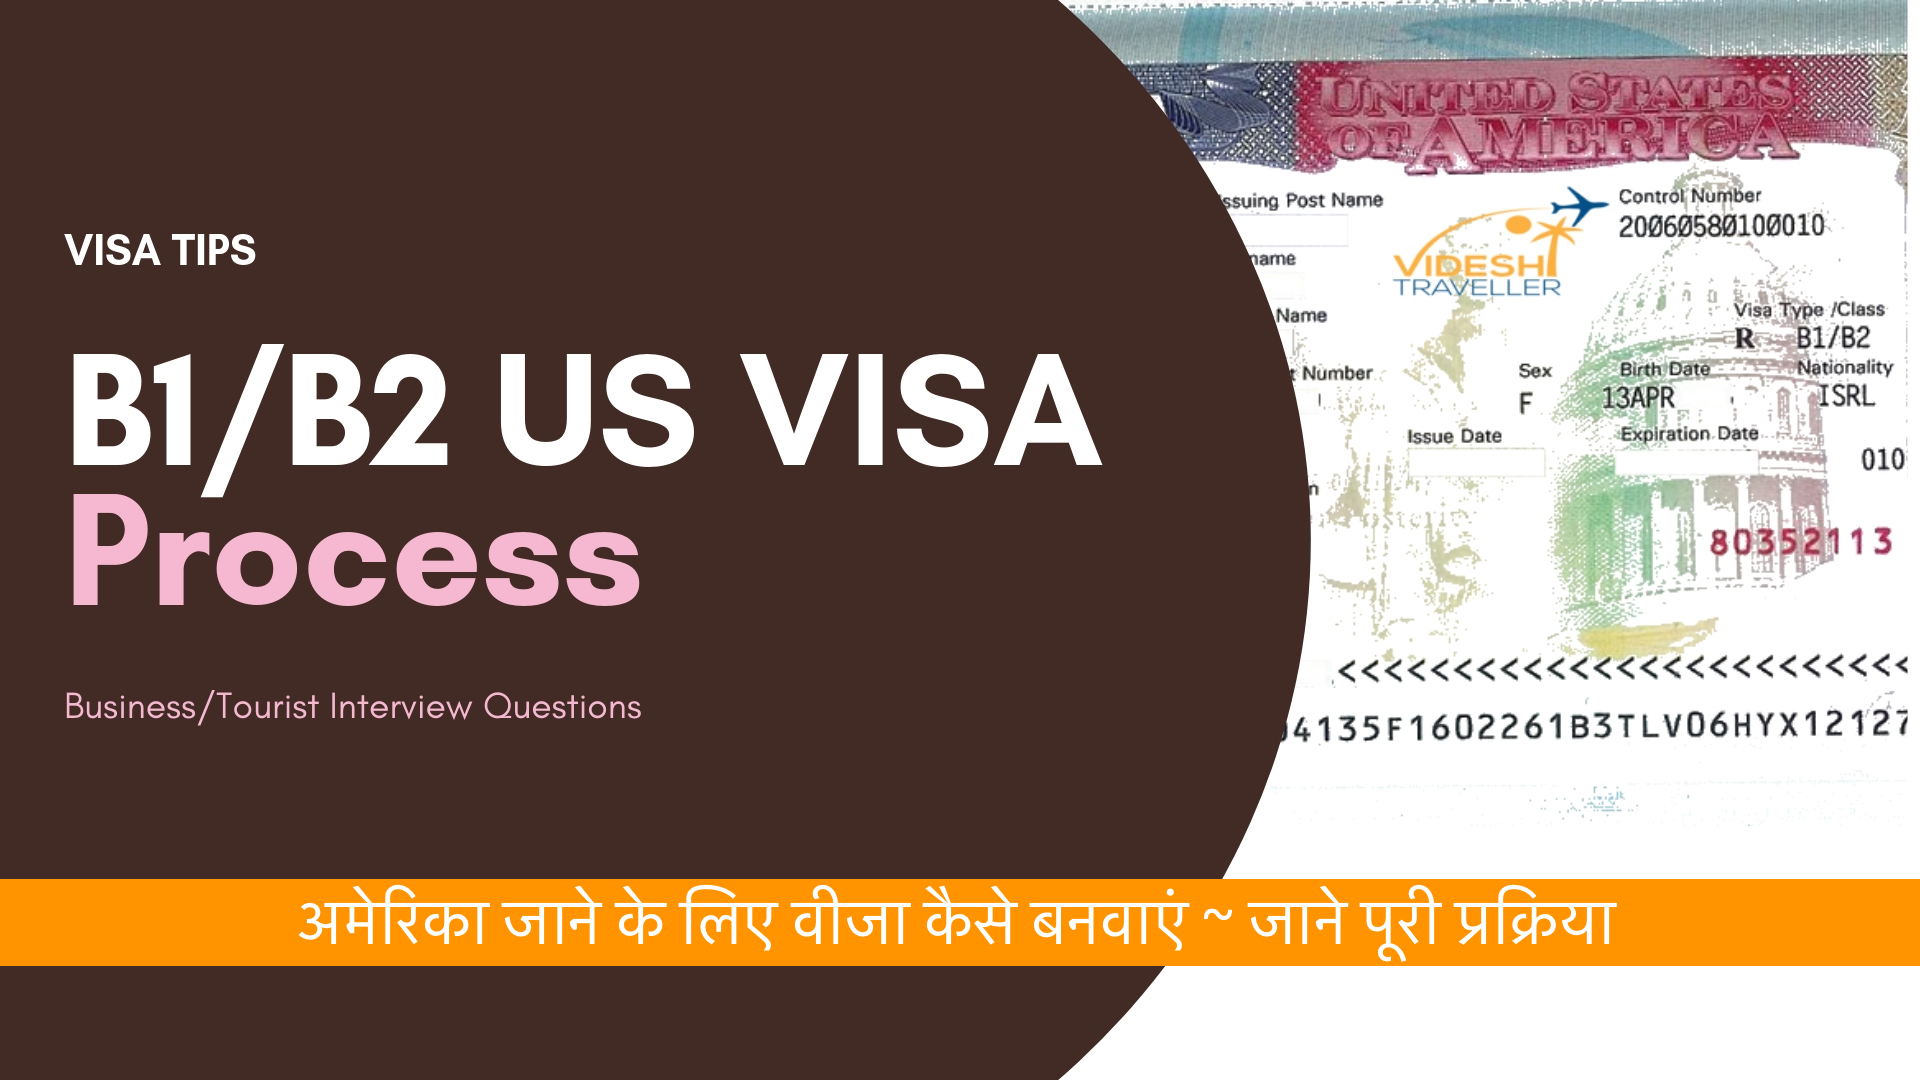 Business/Tourist Interview Questions b1 b2 visa process